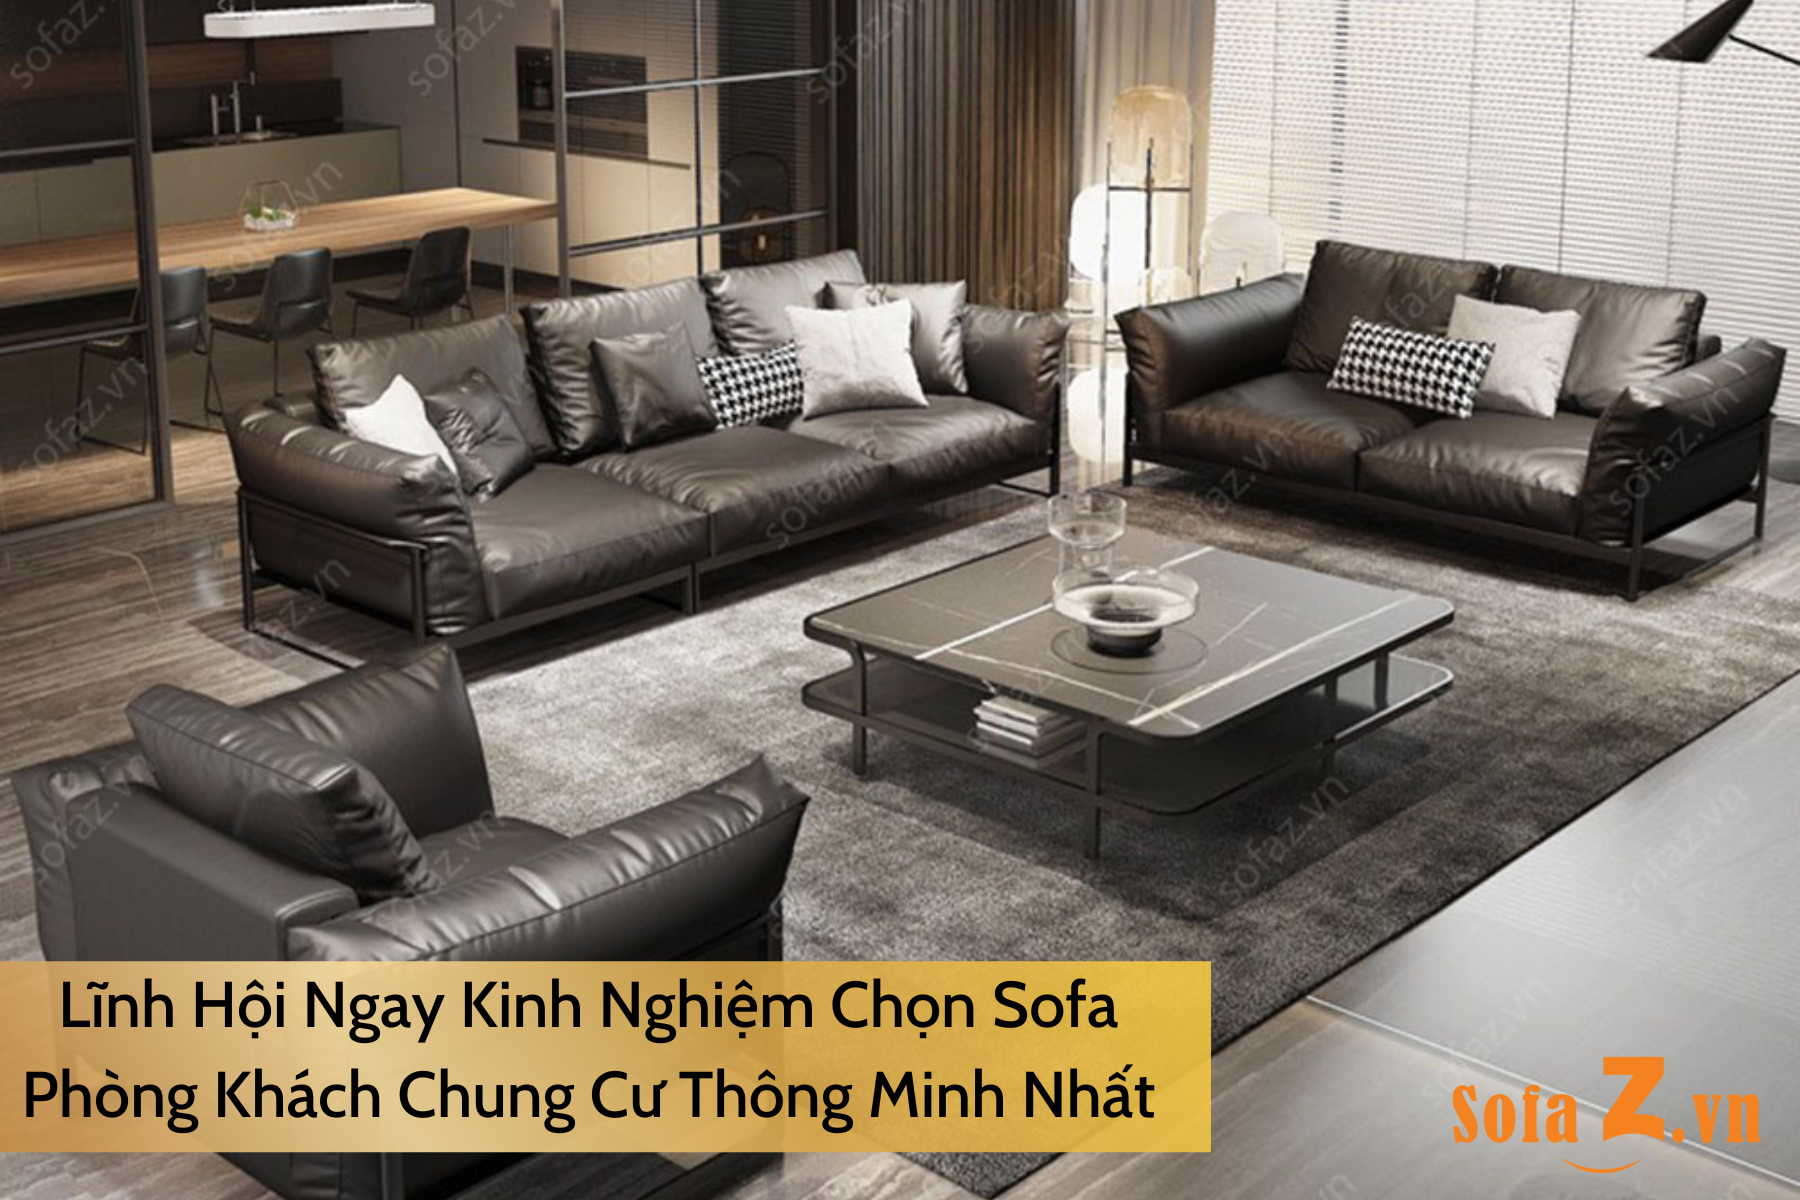 linh-hoi-ngay-kinh-nghiem-chon-sofa-phong-khach-chung-cu-thong-minh-nhat.html